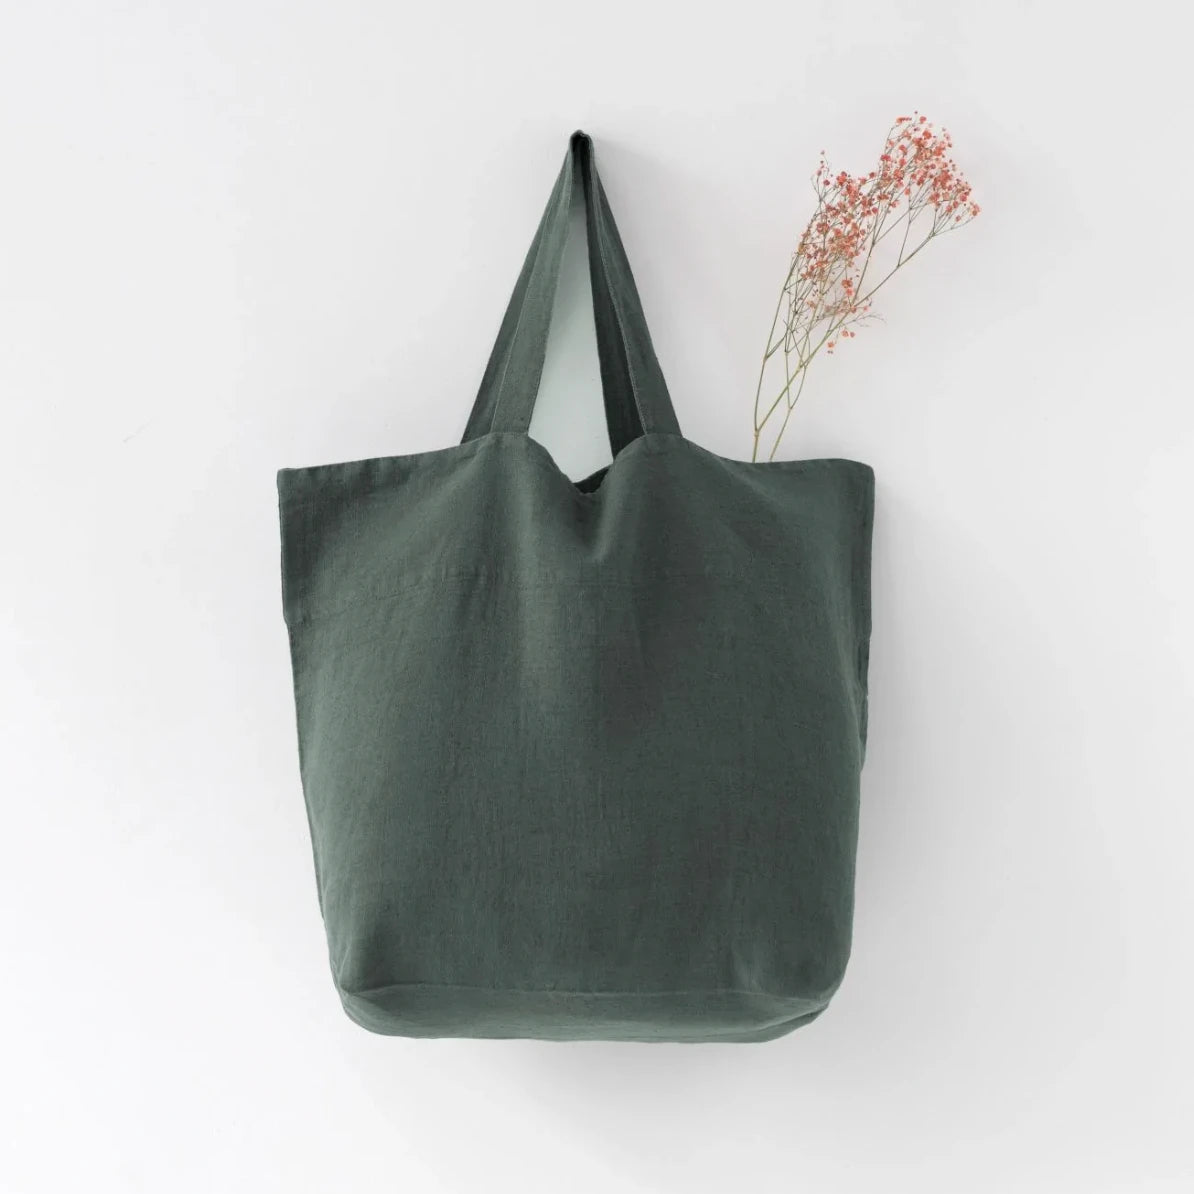 Medelstor tygväska i skogsgrön linne som hänger på en krok. Väskan har formen av en rektangel med medellånga handtag. Från väskan sticker en grön torkad kvist upp.